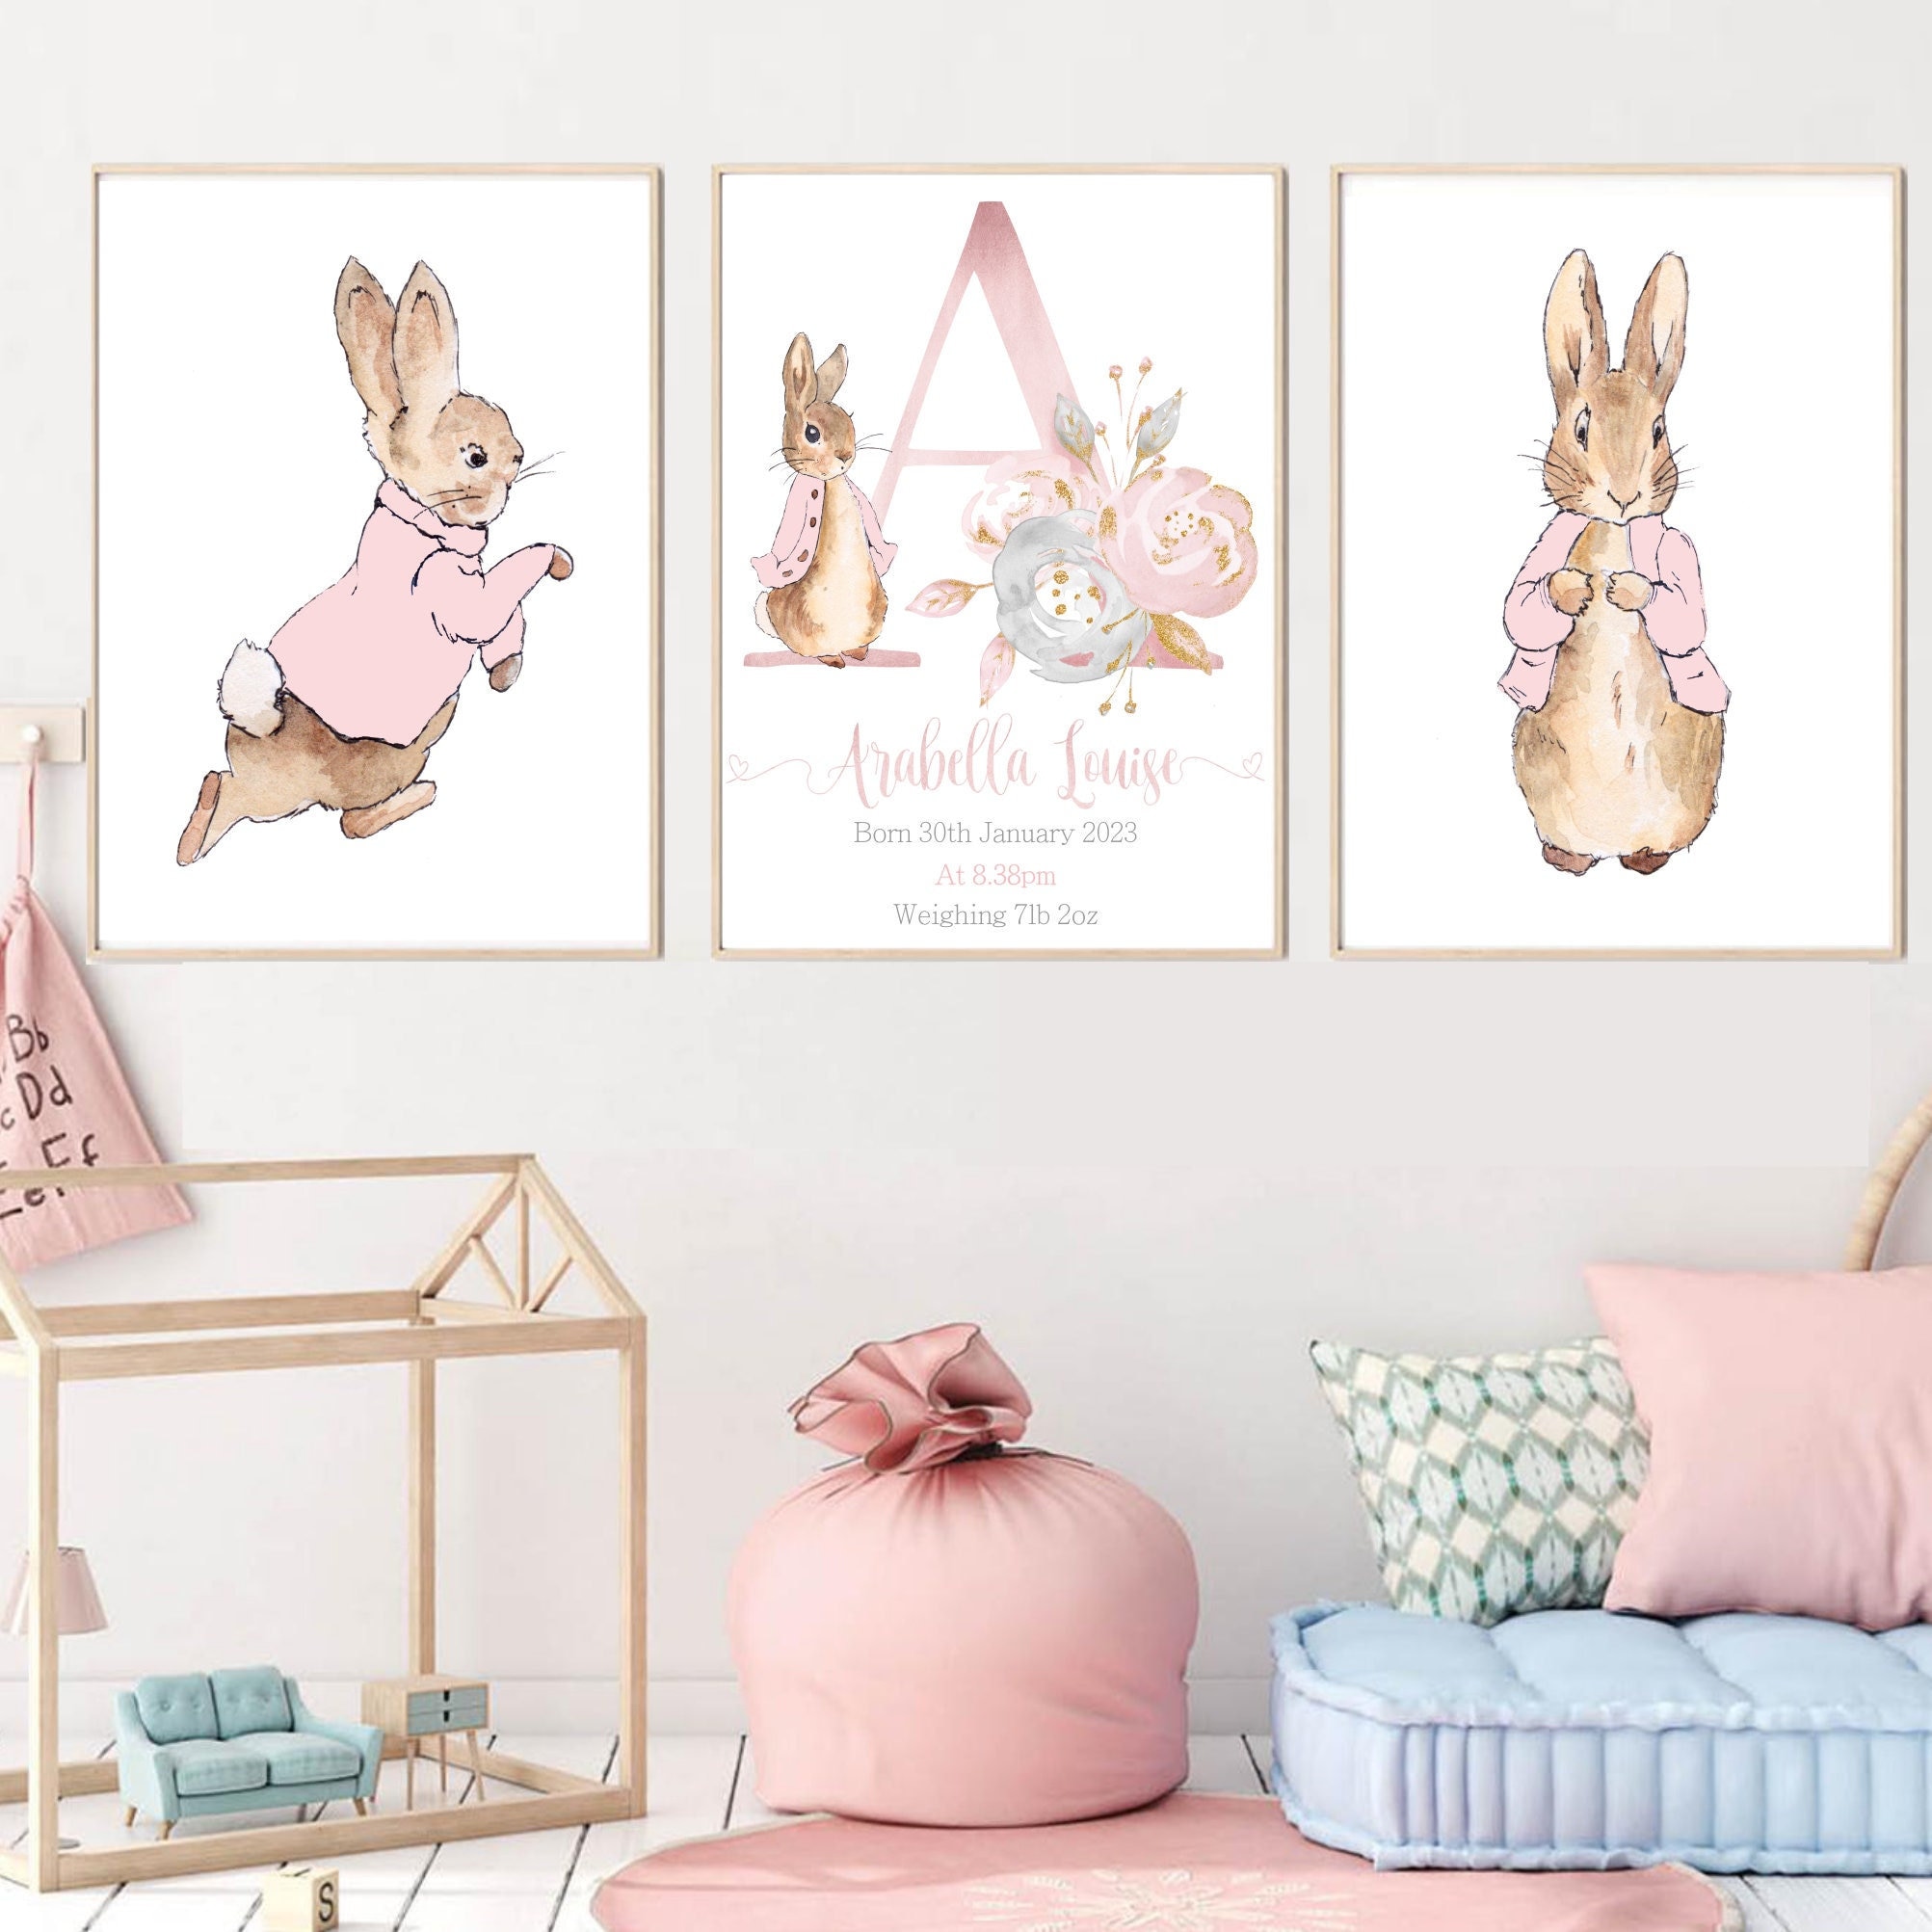 peter rabbit bedroom - decorating peter rabbit theme bedroom